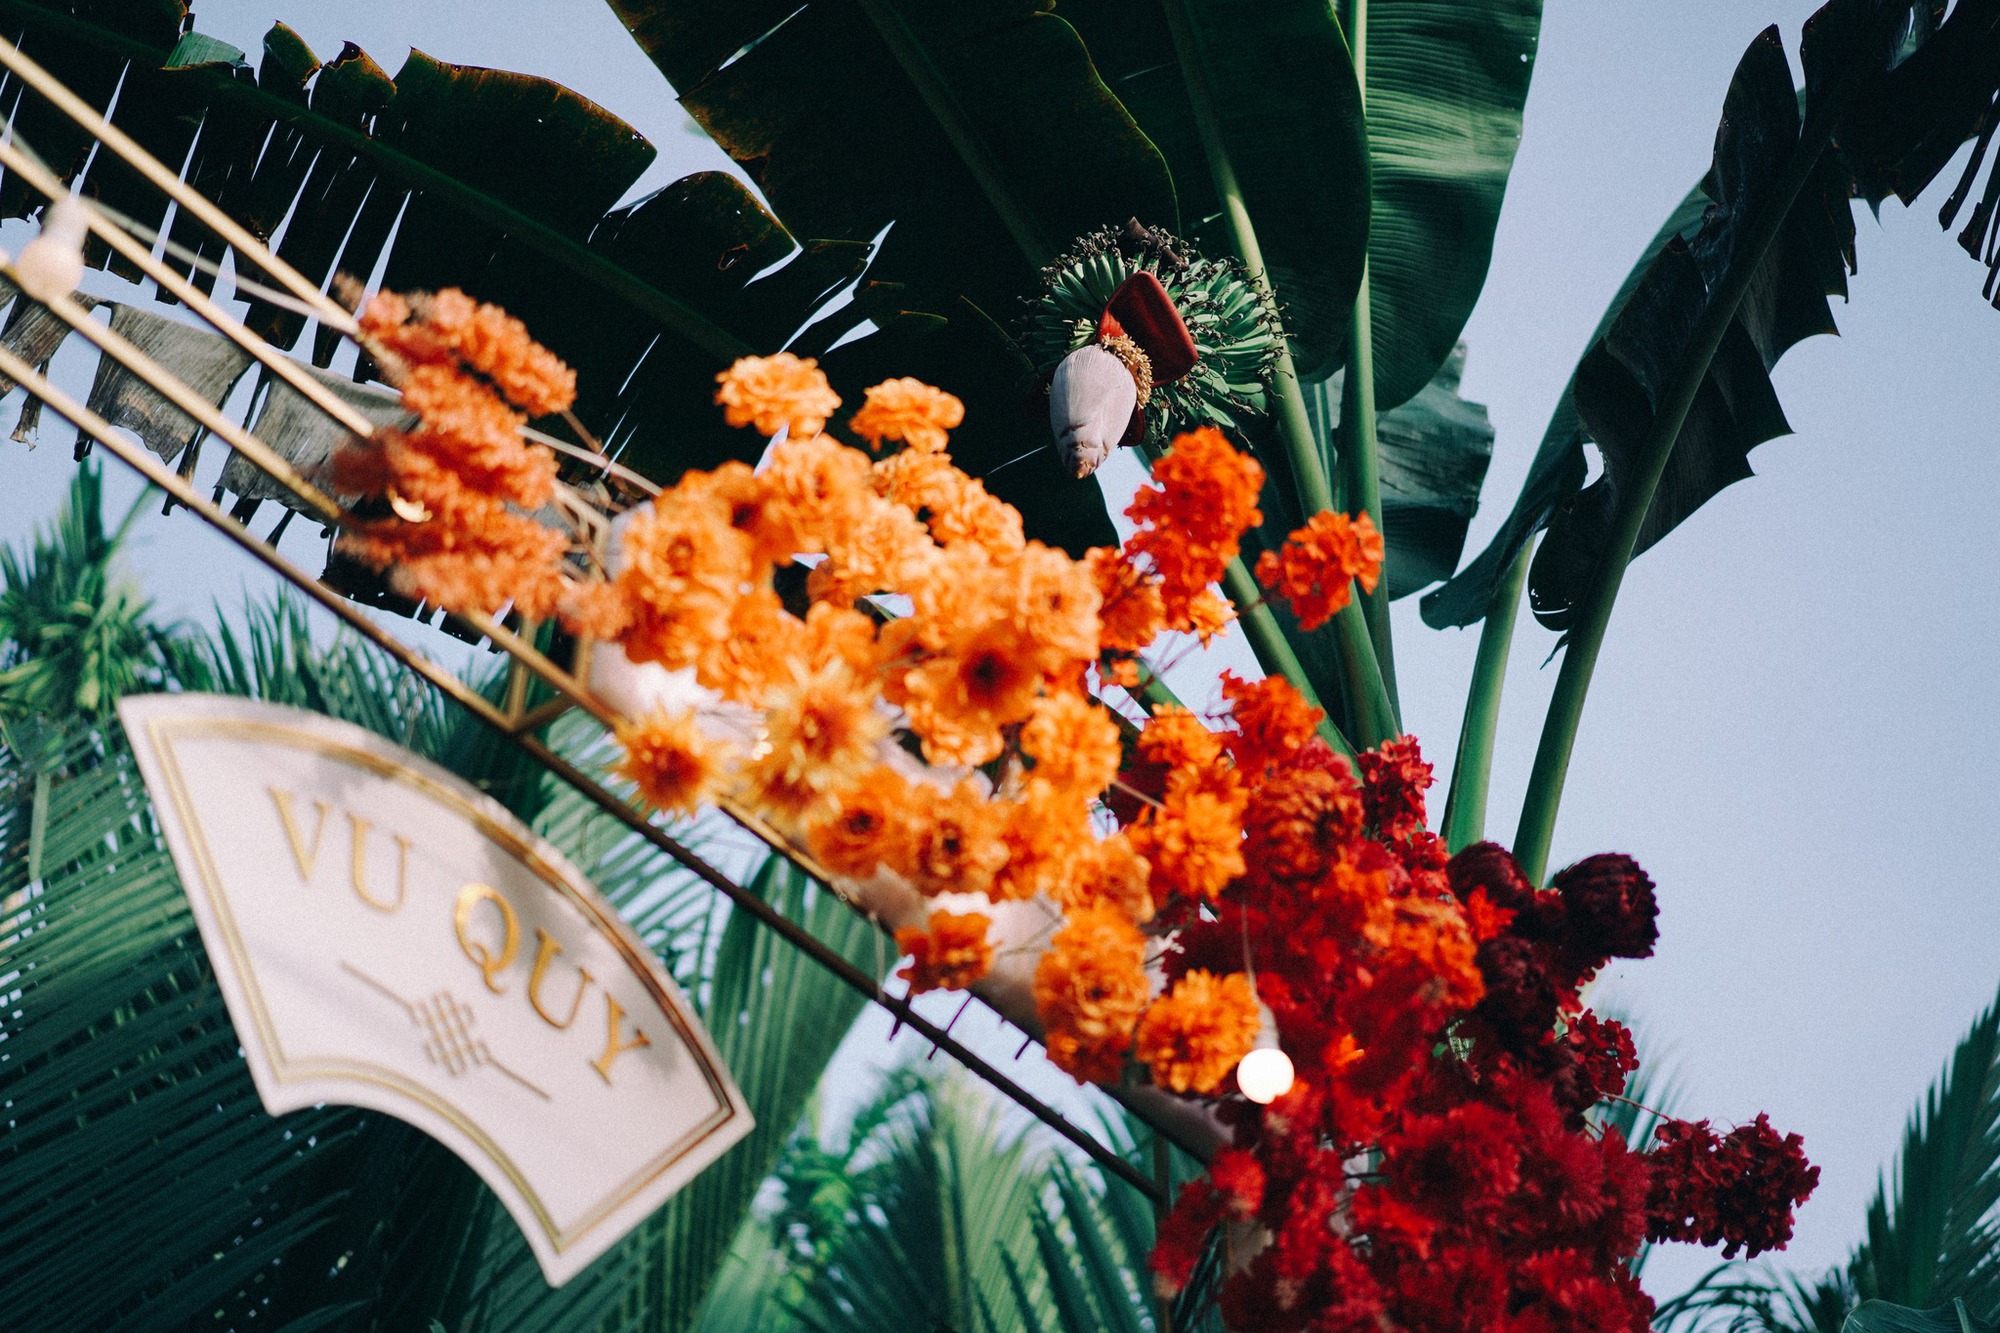 Đám cưới trong vườn dừa nước ở Trà Vinh, vừa đơn giản vừa đậm bản sắc miền Tây - Ảnh 2.